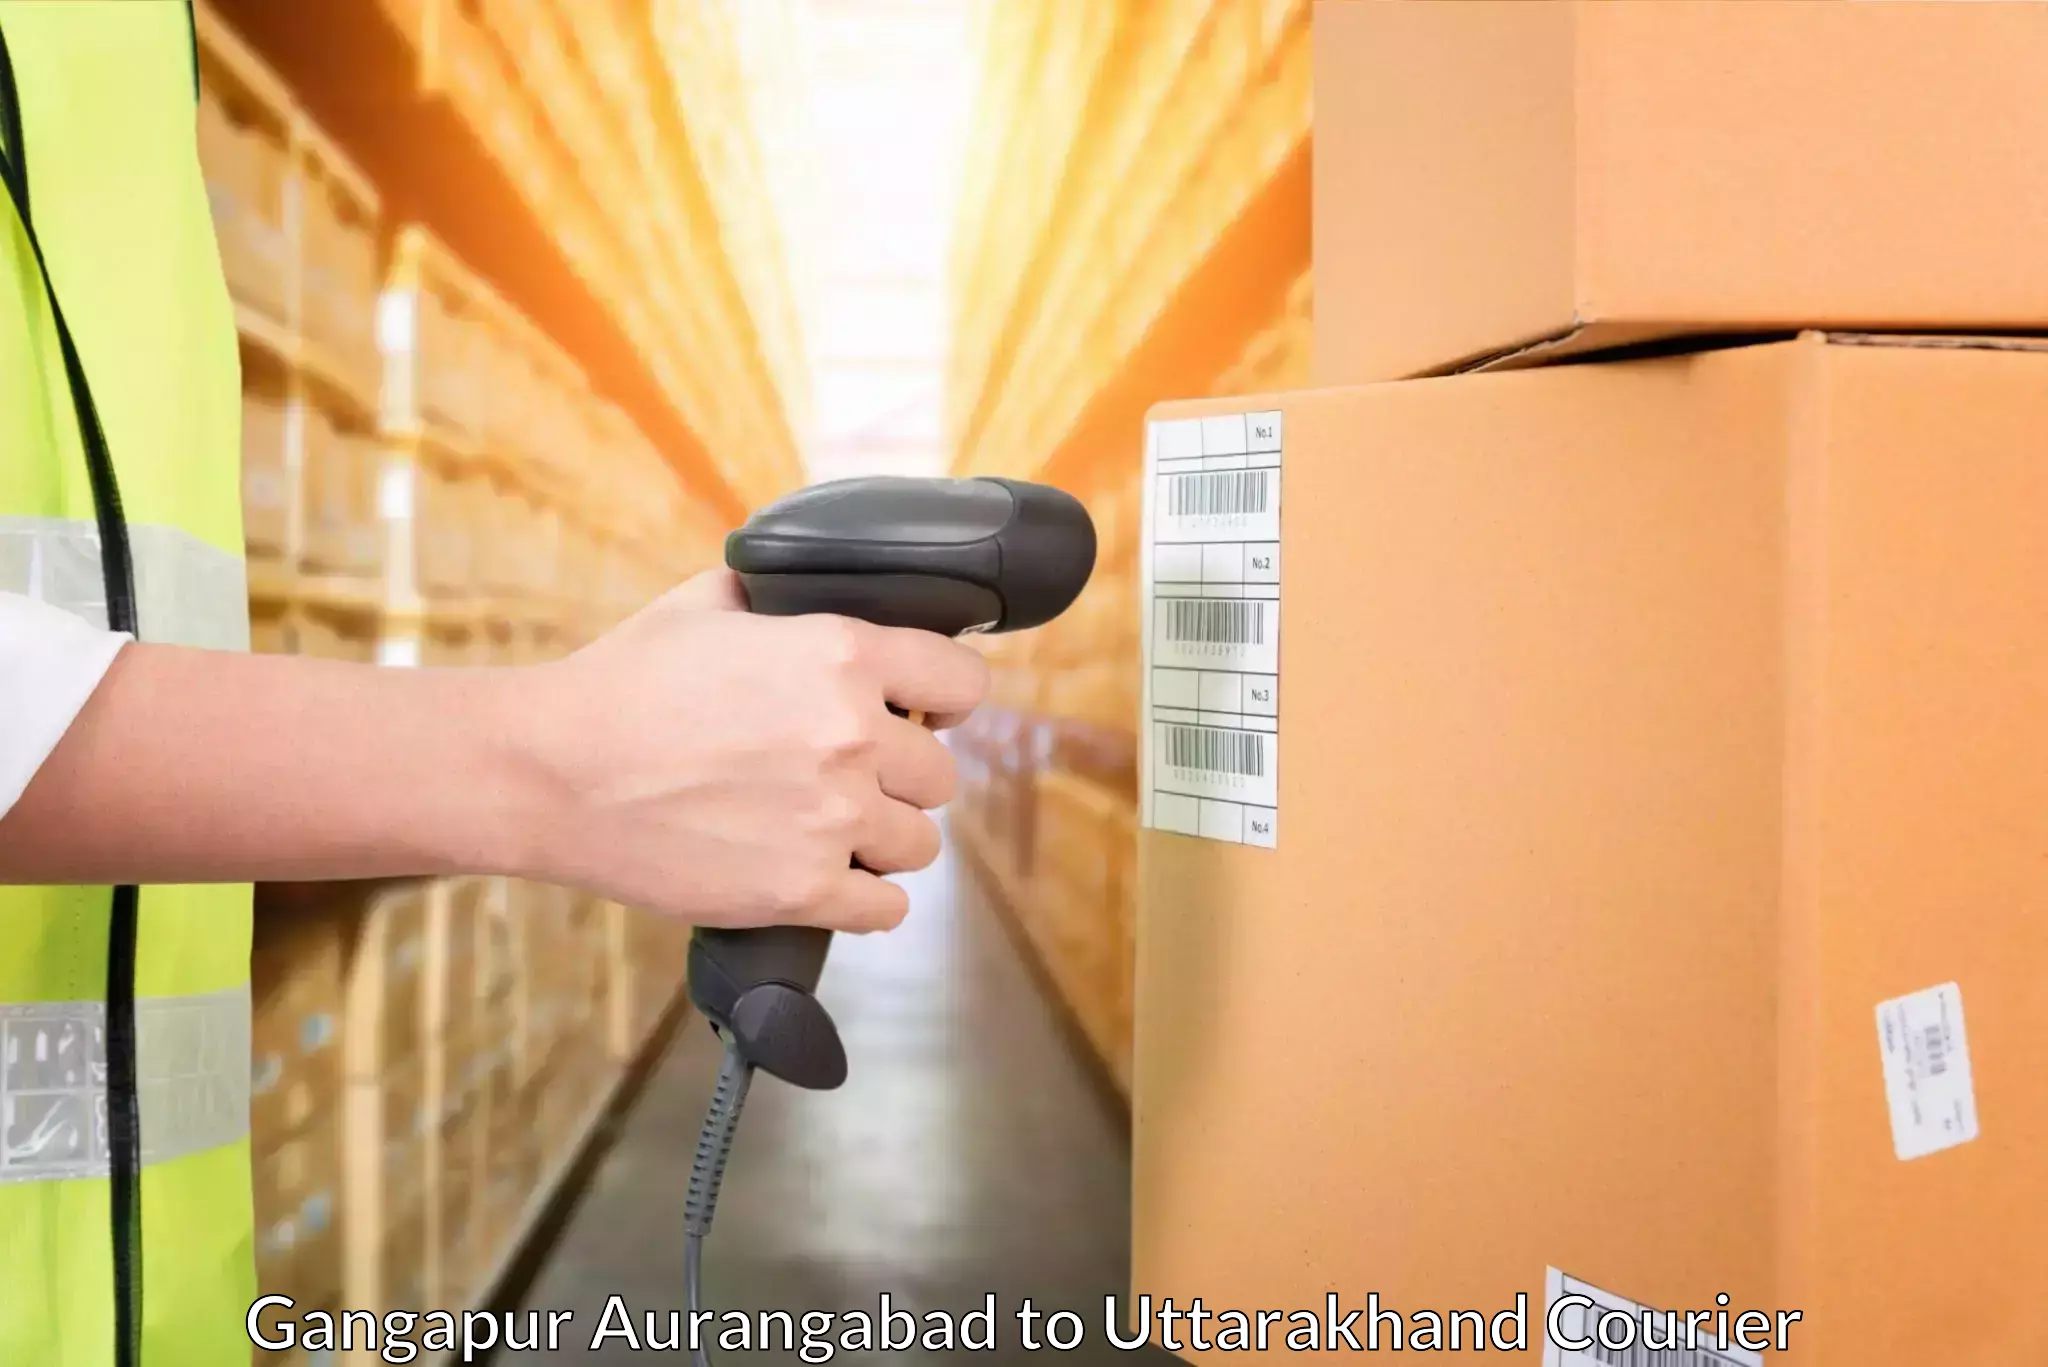 Automated shipping processes Gangapur Aurangabad to Kashipur